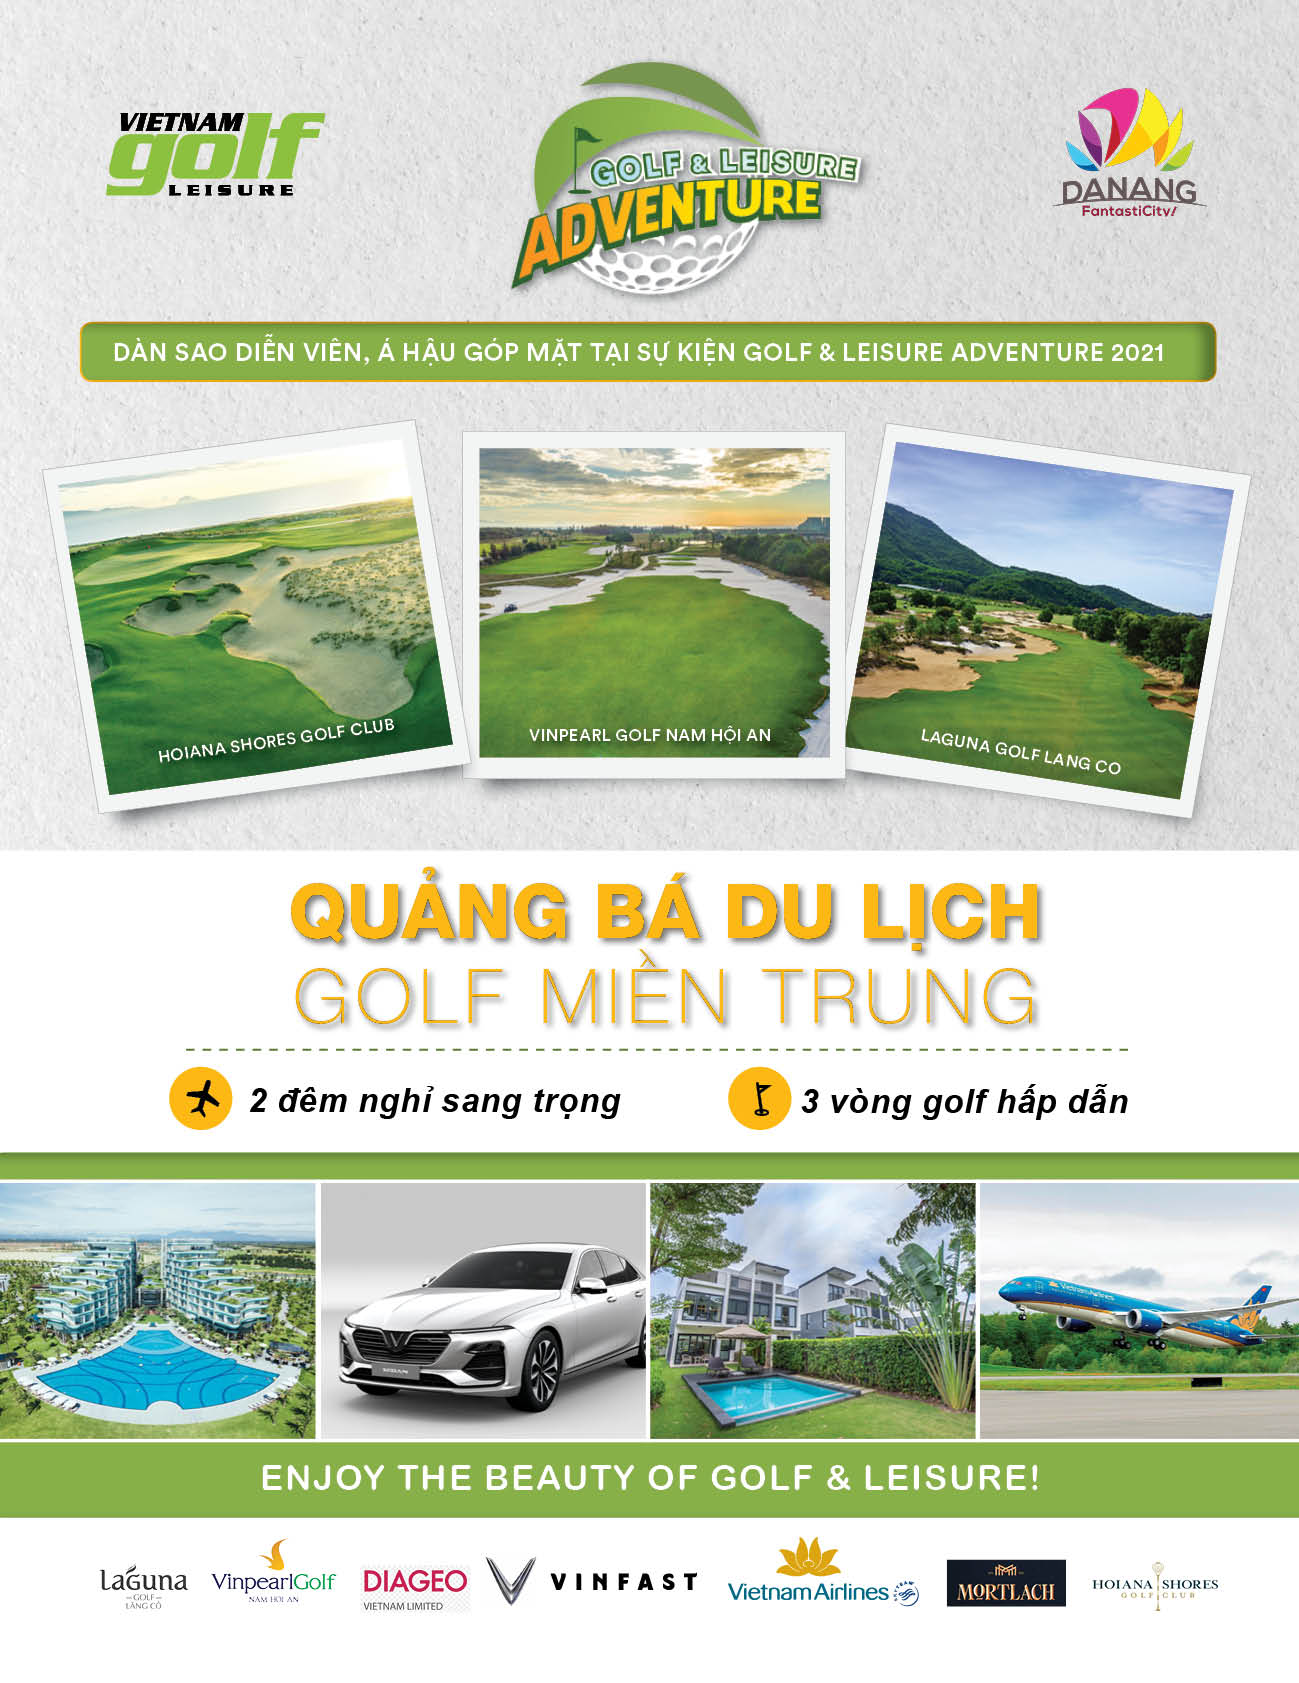 Golf & Leisure Adventure 2021 cùng dàn sao quảng bá cho du lịch golf Việt Nam